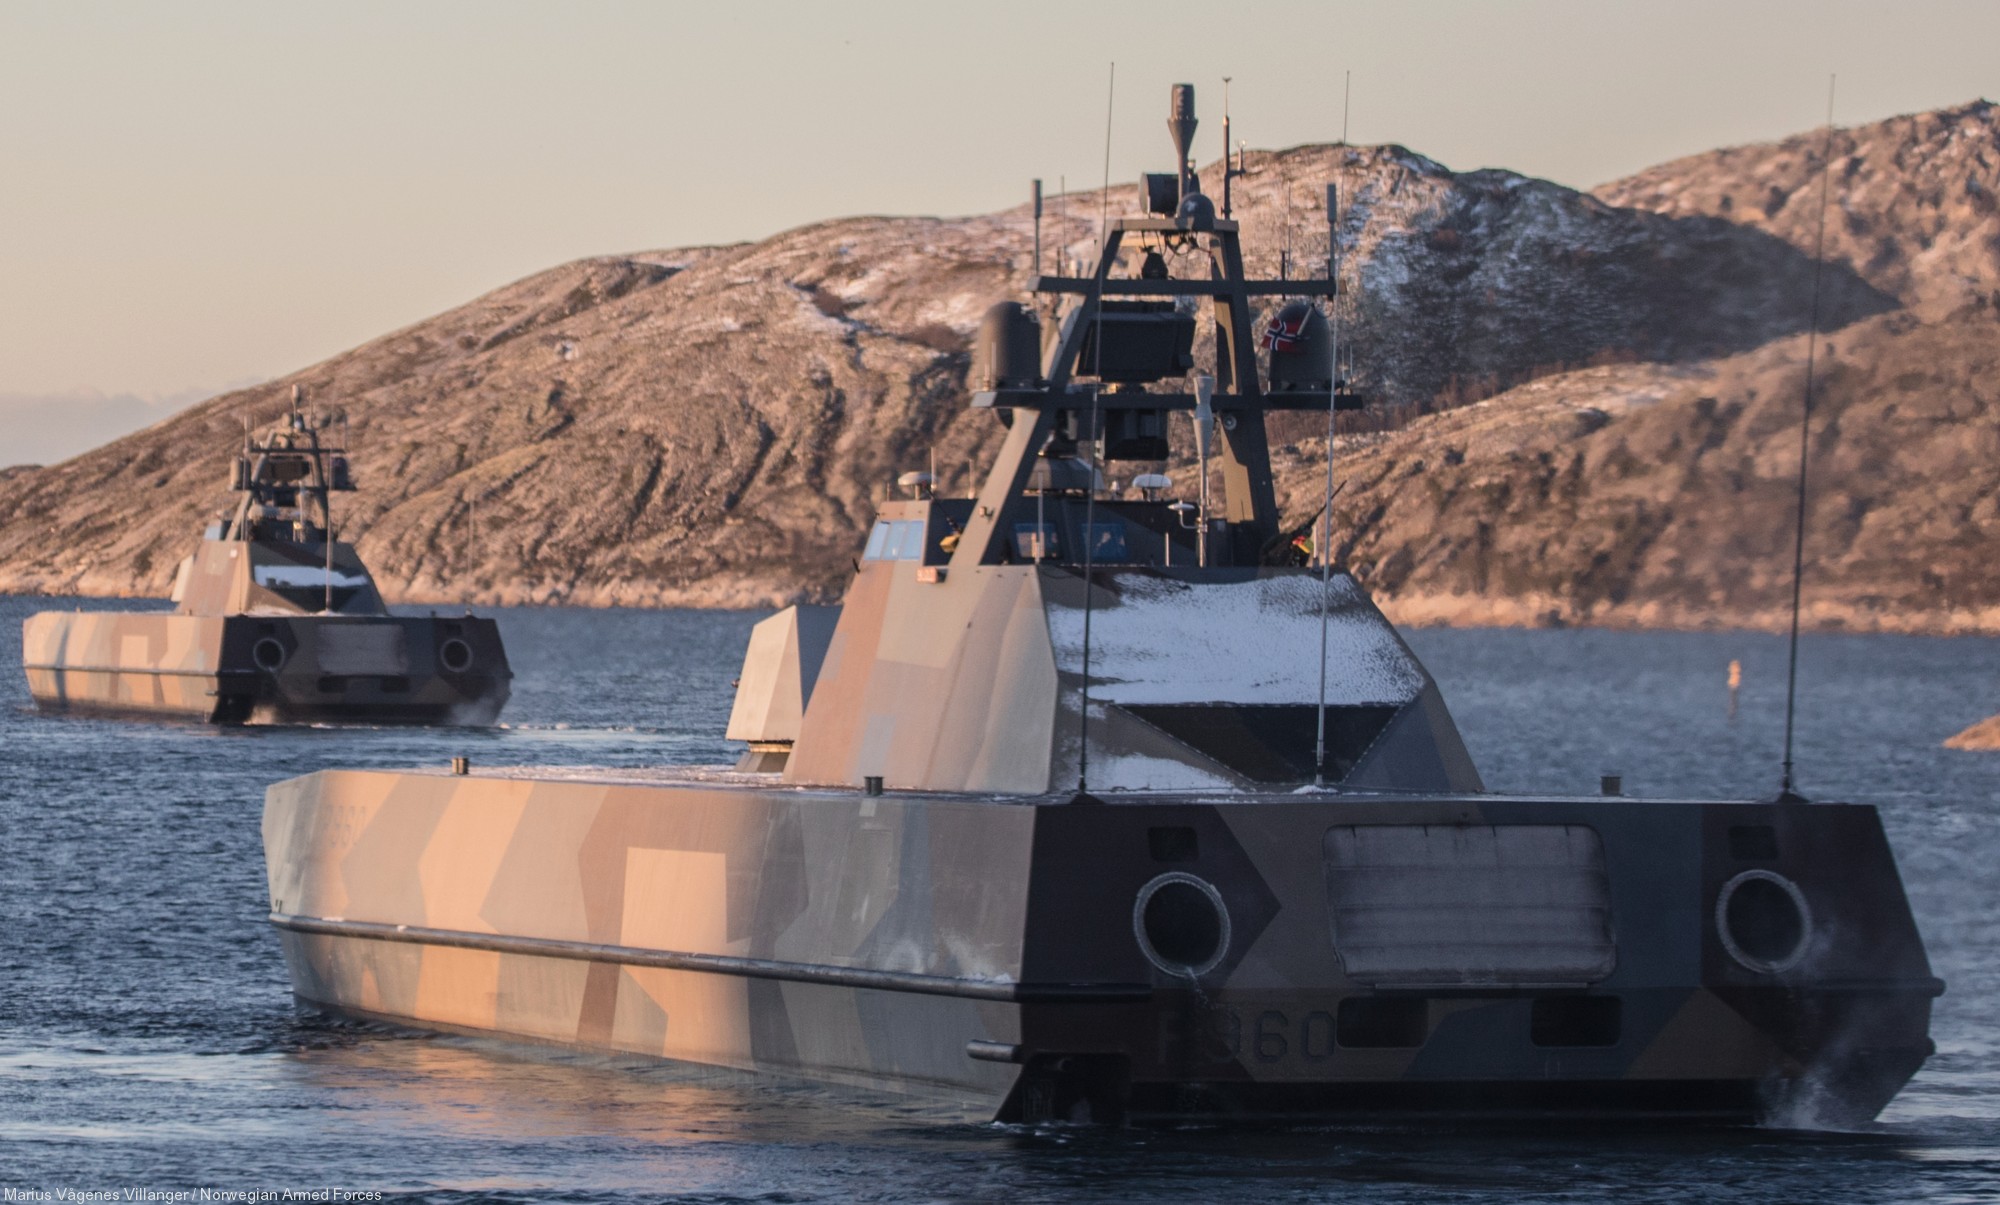 p-960 skjold hnoms knm corvette royal norwegian navy sjoforsvaret 02